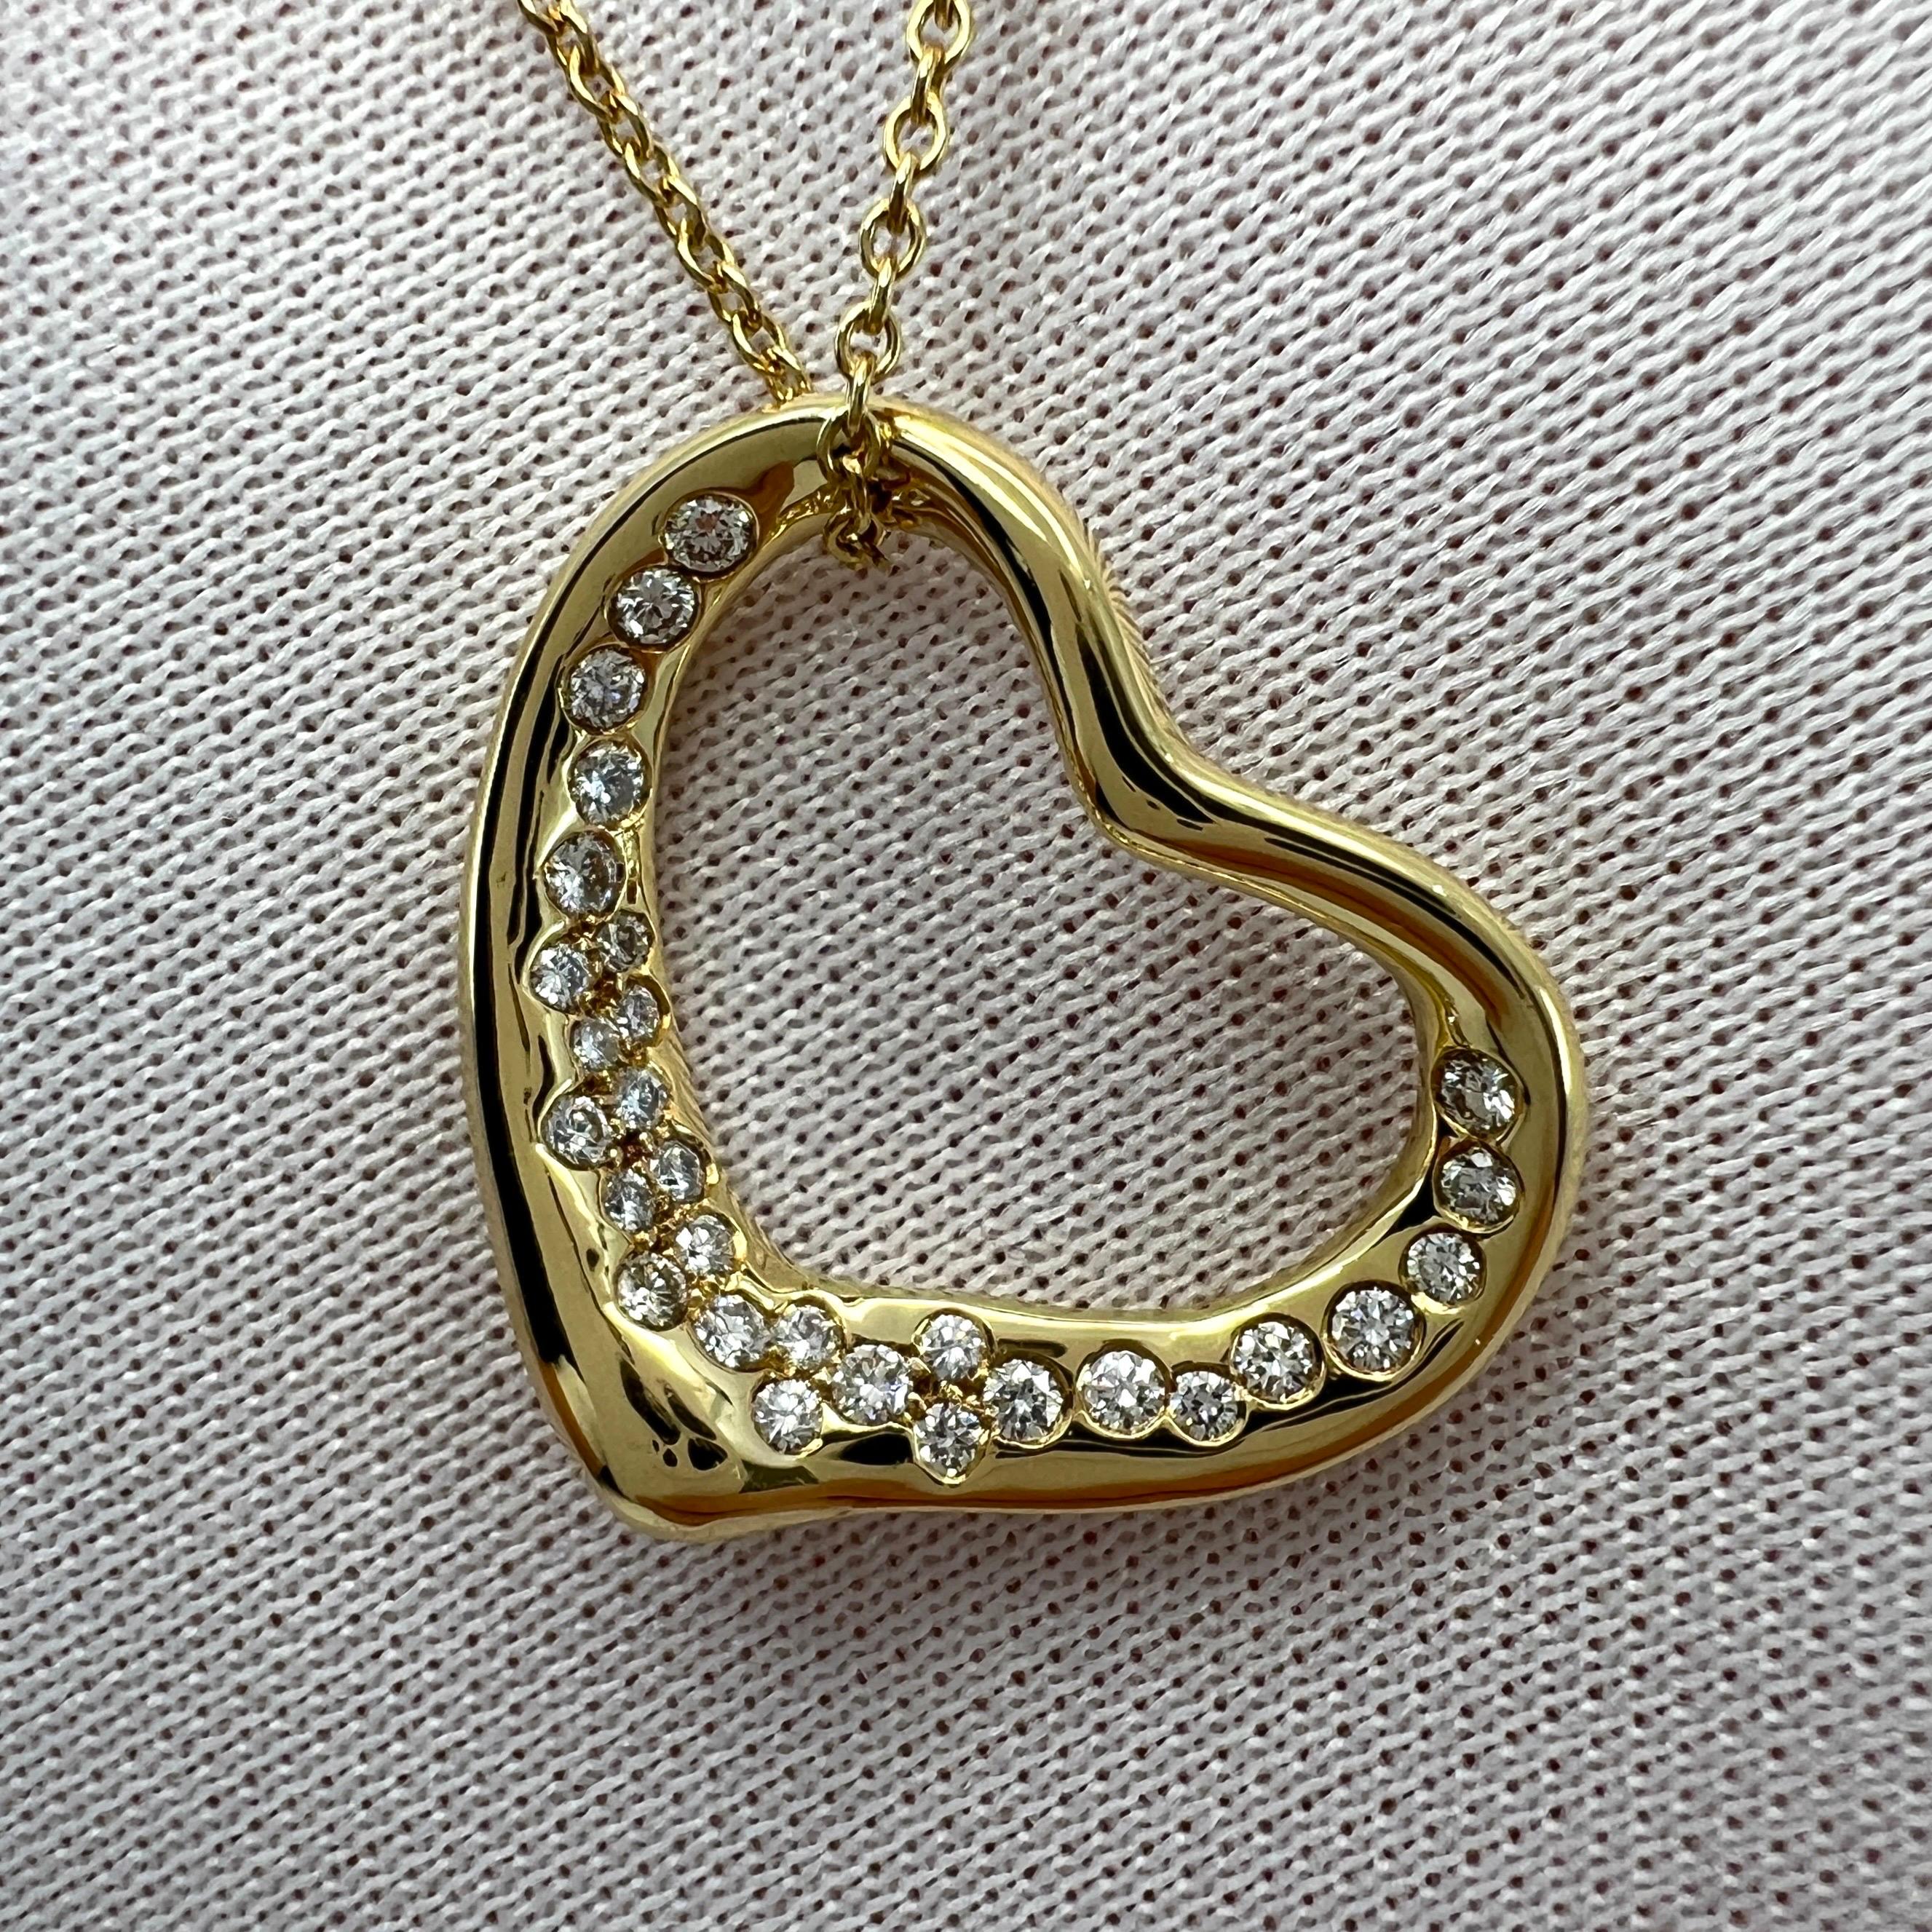 Tiffany & Co. Elsa Peretti Open Heart Diamond 18k Yellow Gold Pendant Necklace For Sale 4